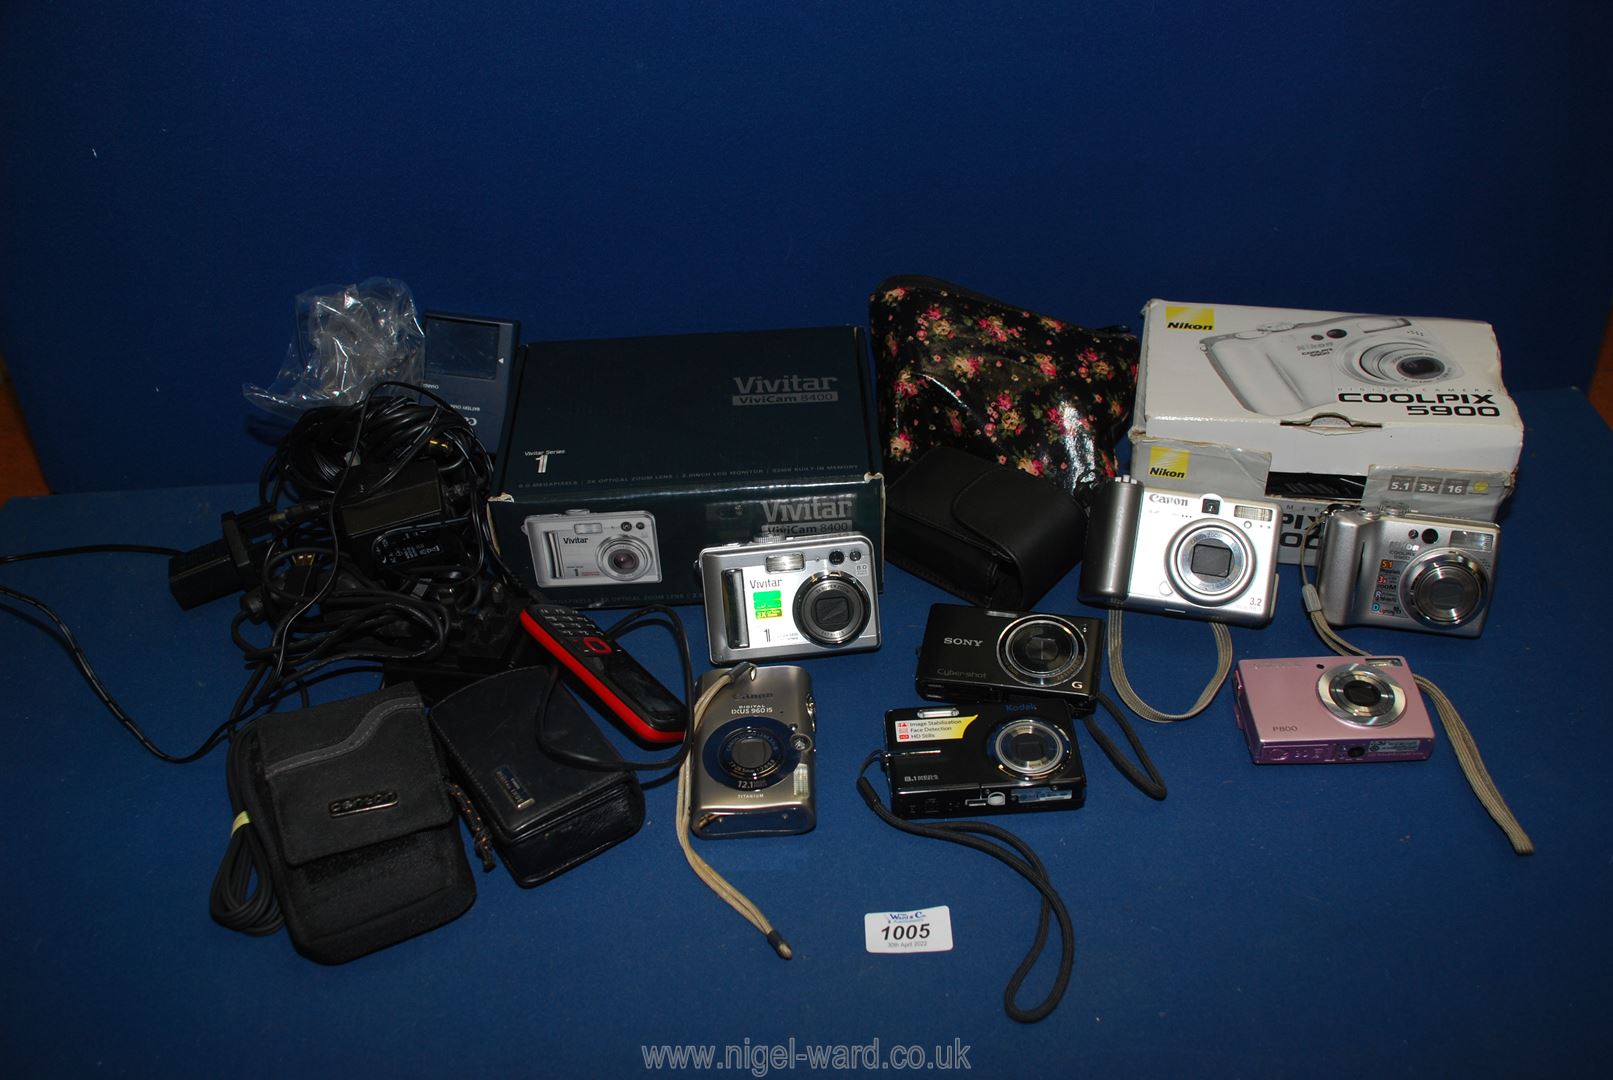 A quantity of digital cameras including a boxed Nikon Cool Pix 5900 5.1 mega pixel, Kodak 8.